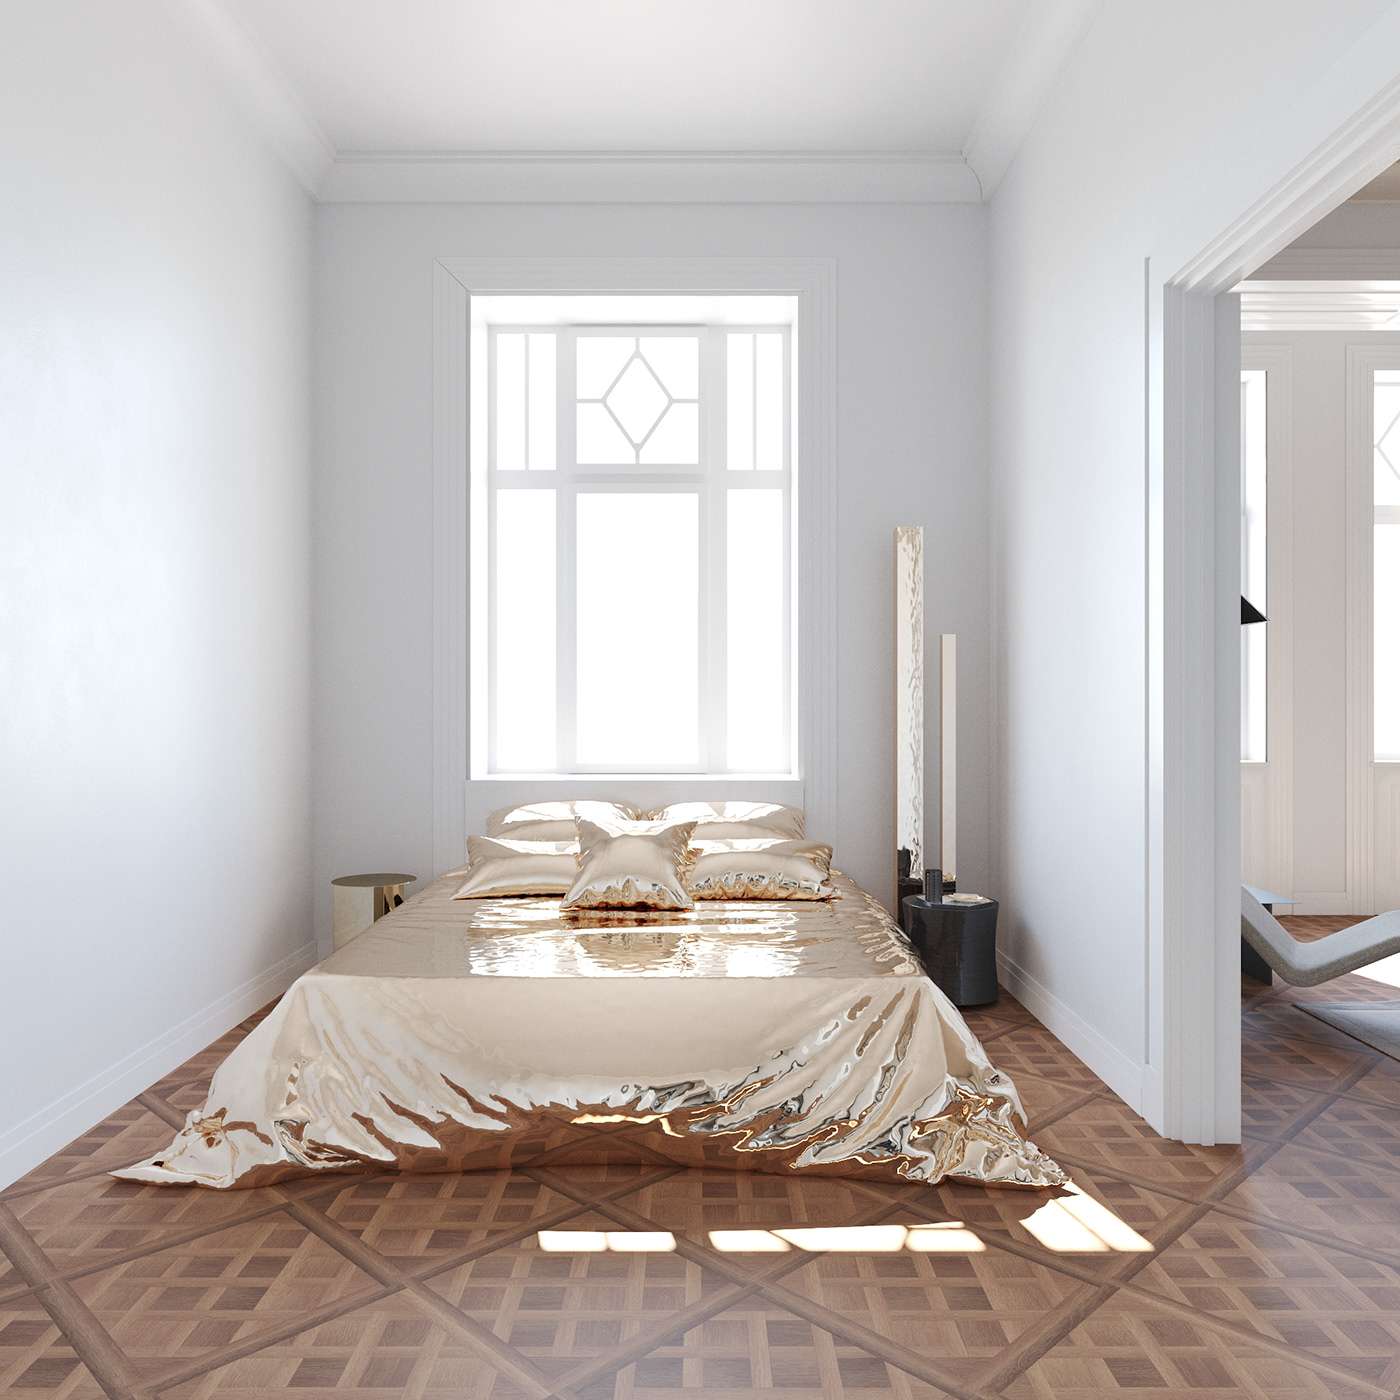 Phòng ngủ đơn giản với những món nội thất cơ bản để tiện kiệm diện tích và không gian